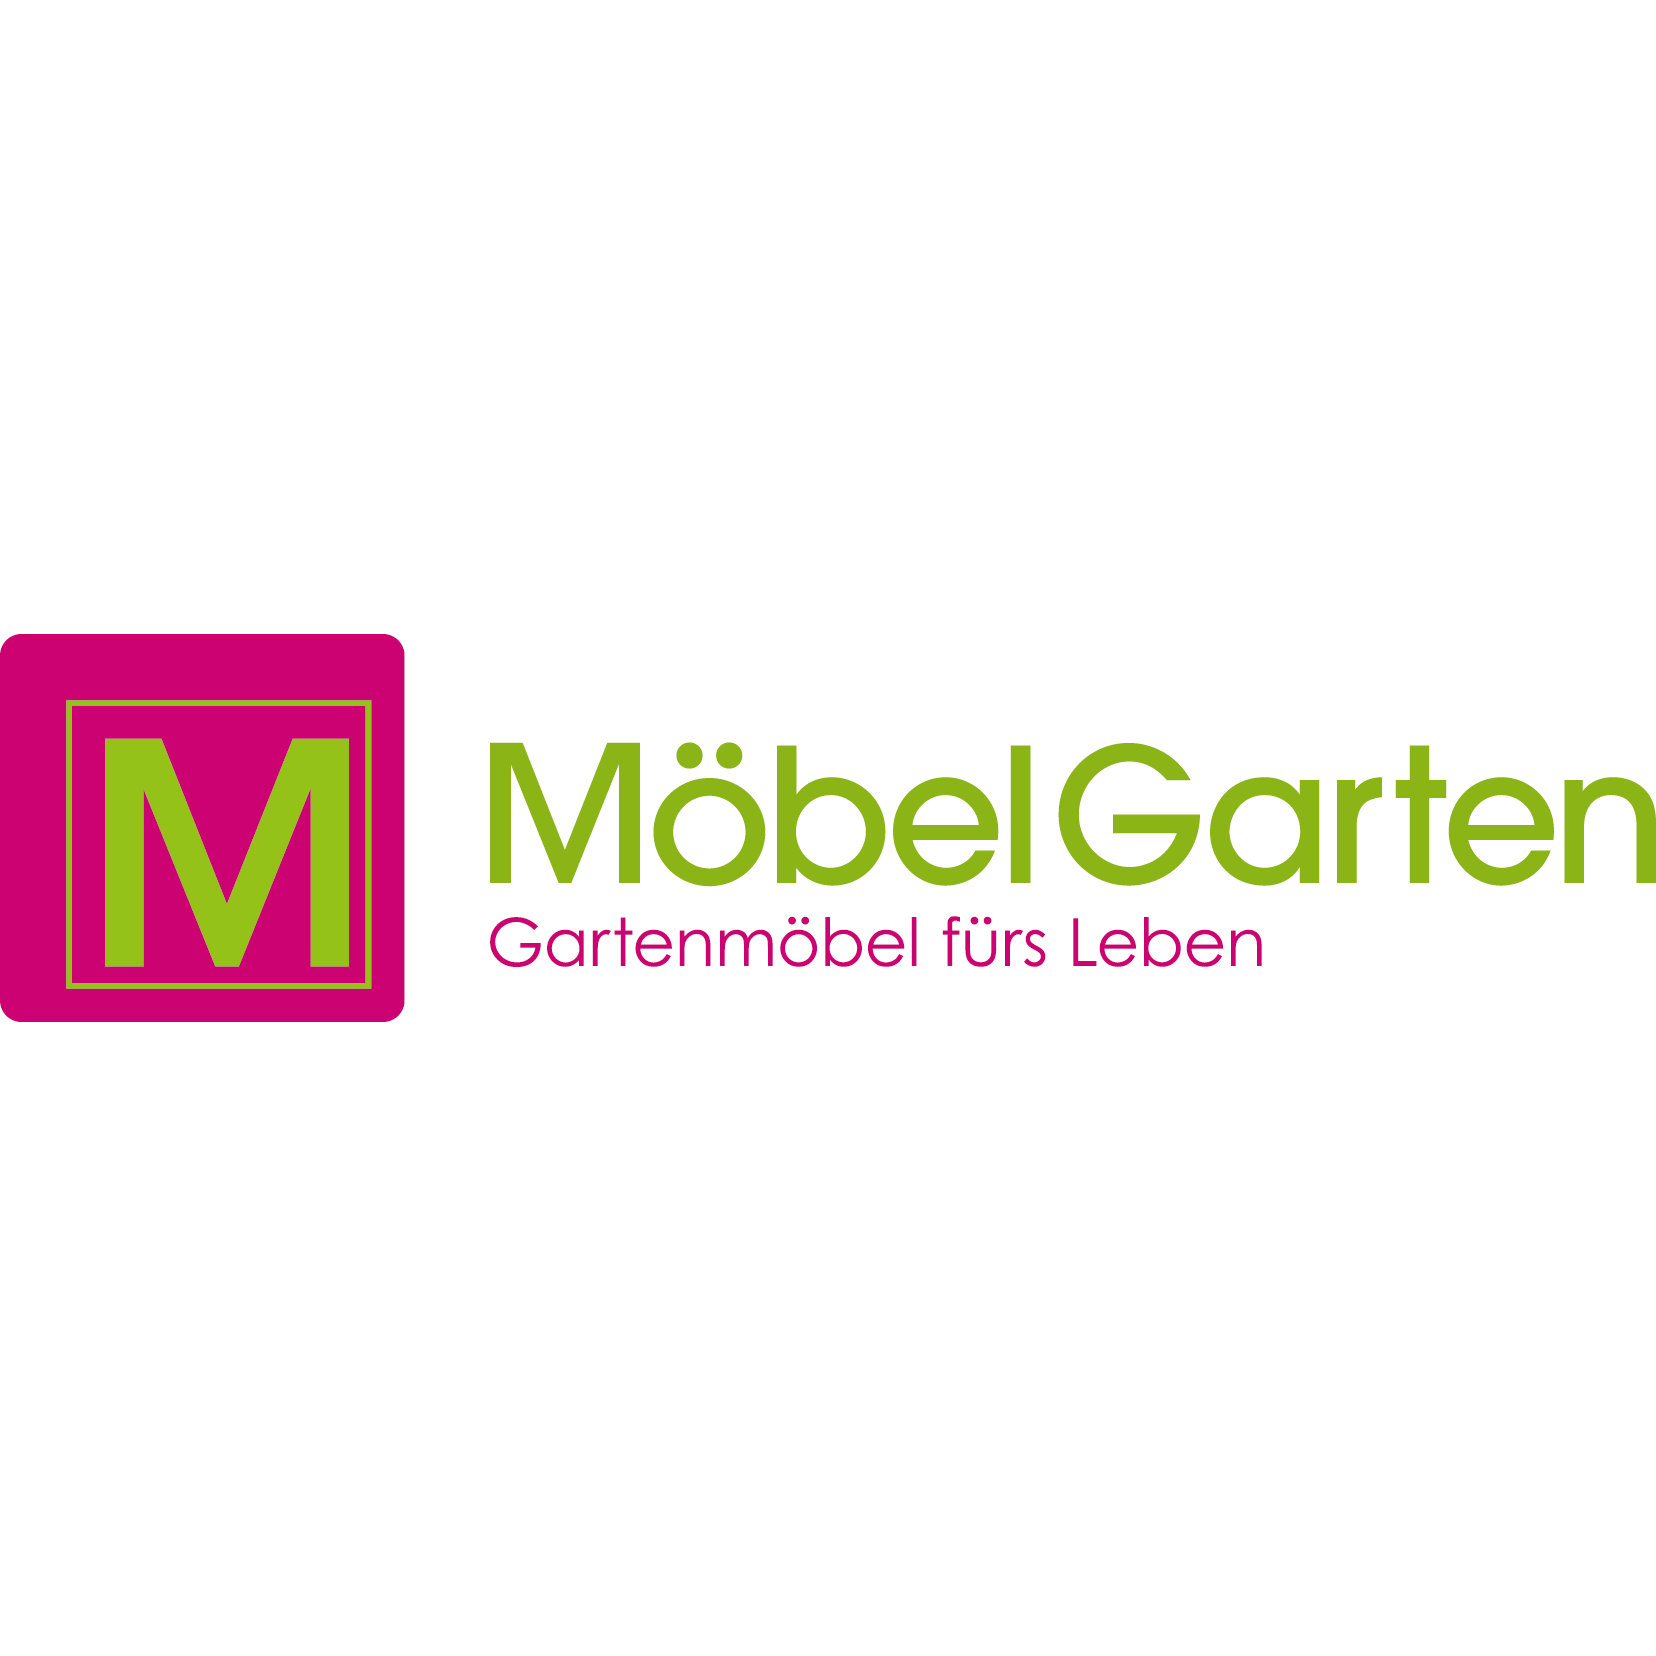 MöbelGarten GmbH - Gartenmöbel fürs Leben Logo